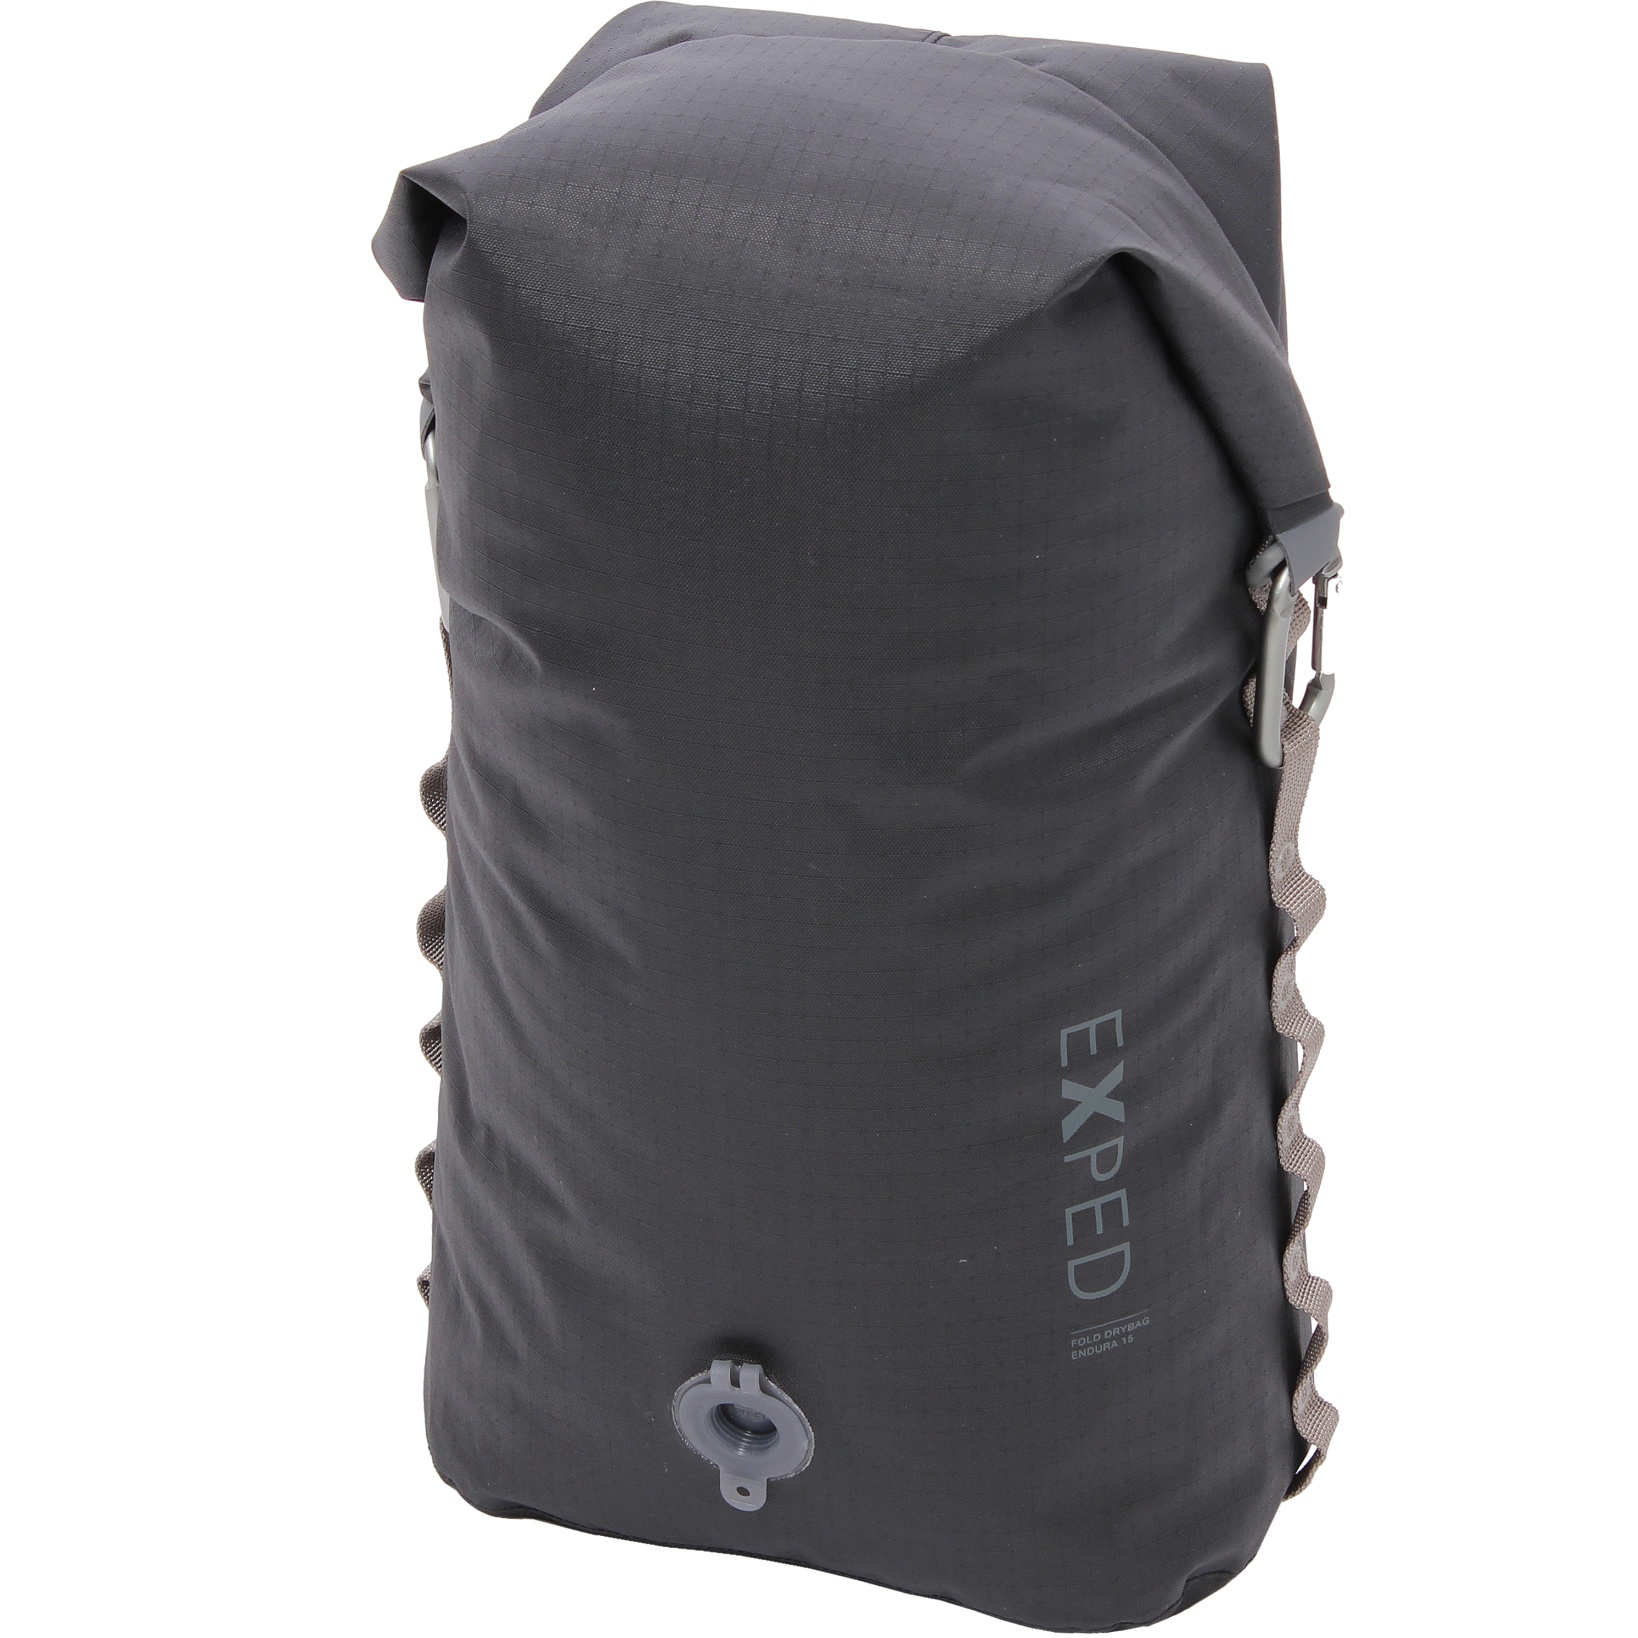 Produktbild von Exped Fold Drybag Endura Packsack - 15L - schwarz